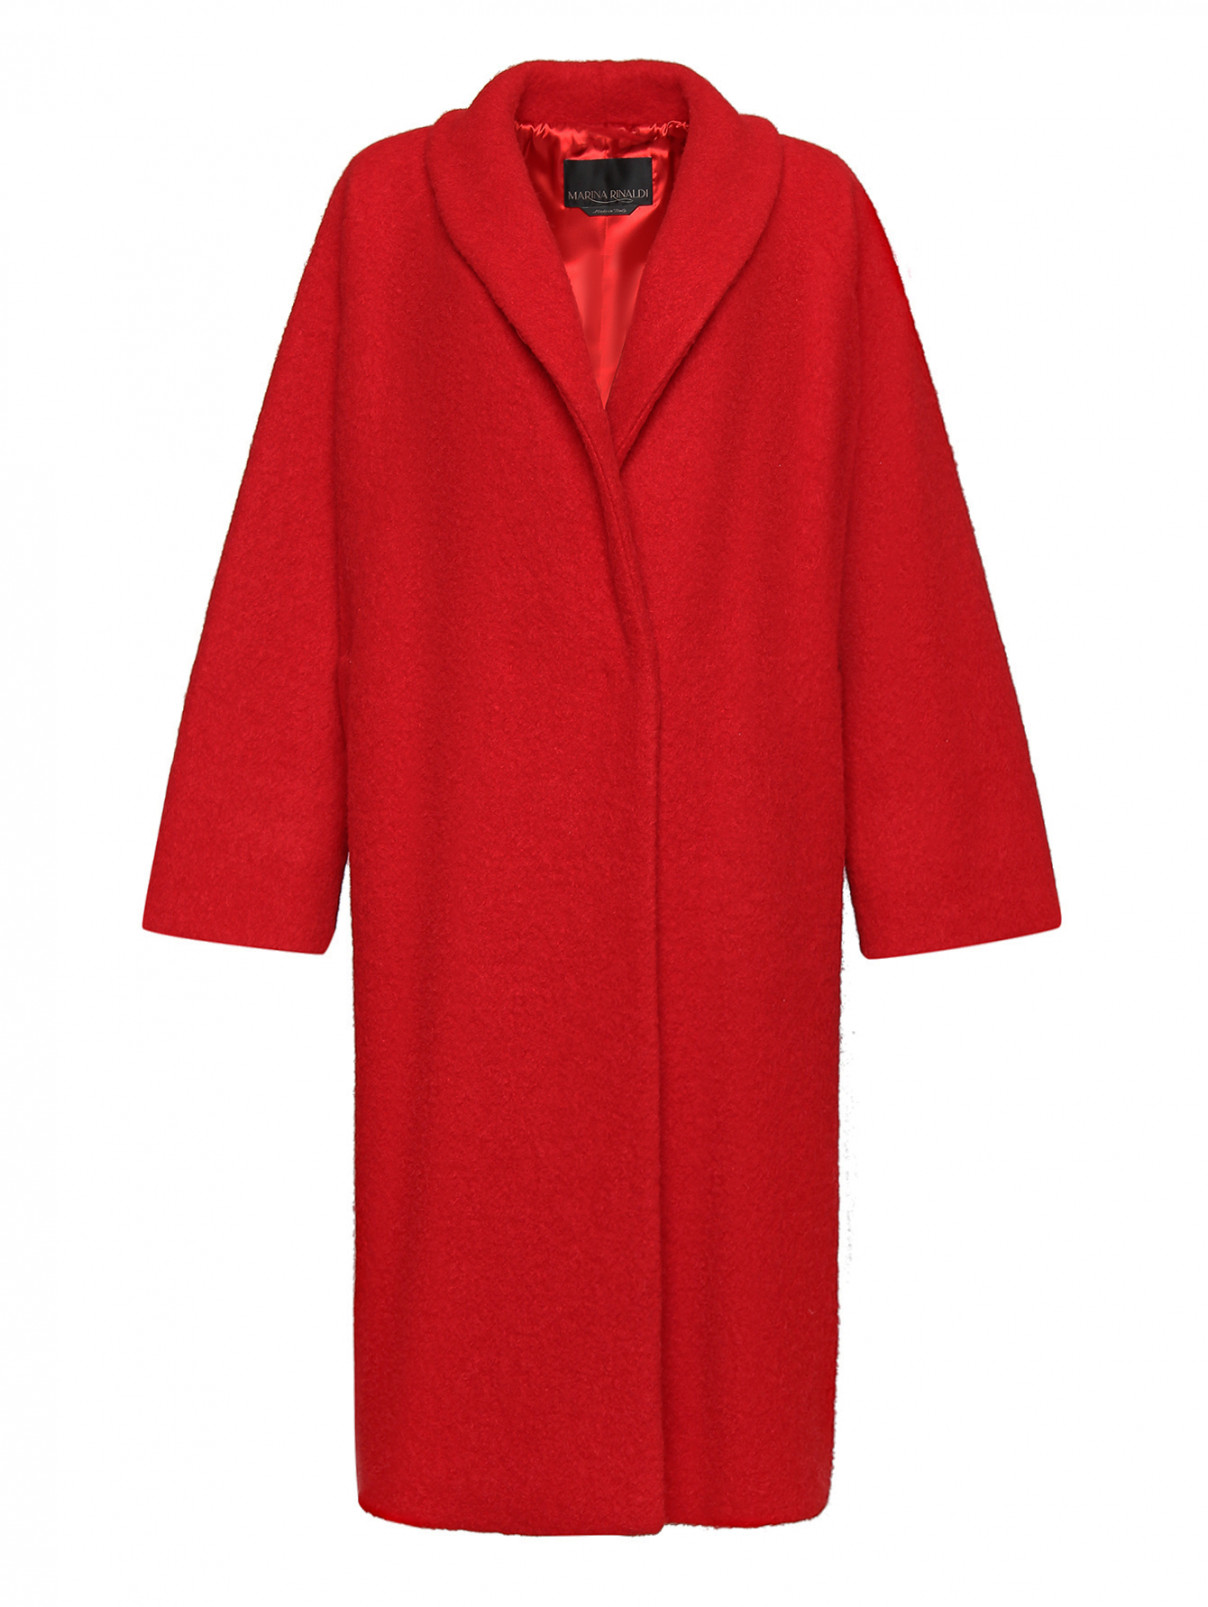 Удлиненное пальто из шерсти и альпаки Marina Rinaldi  –  Общий вид  – Цвет:  Красный